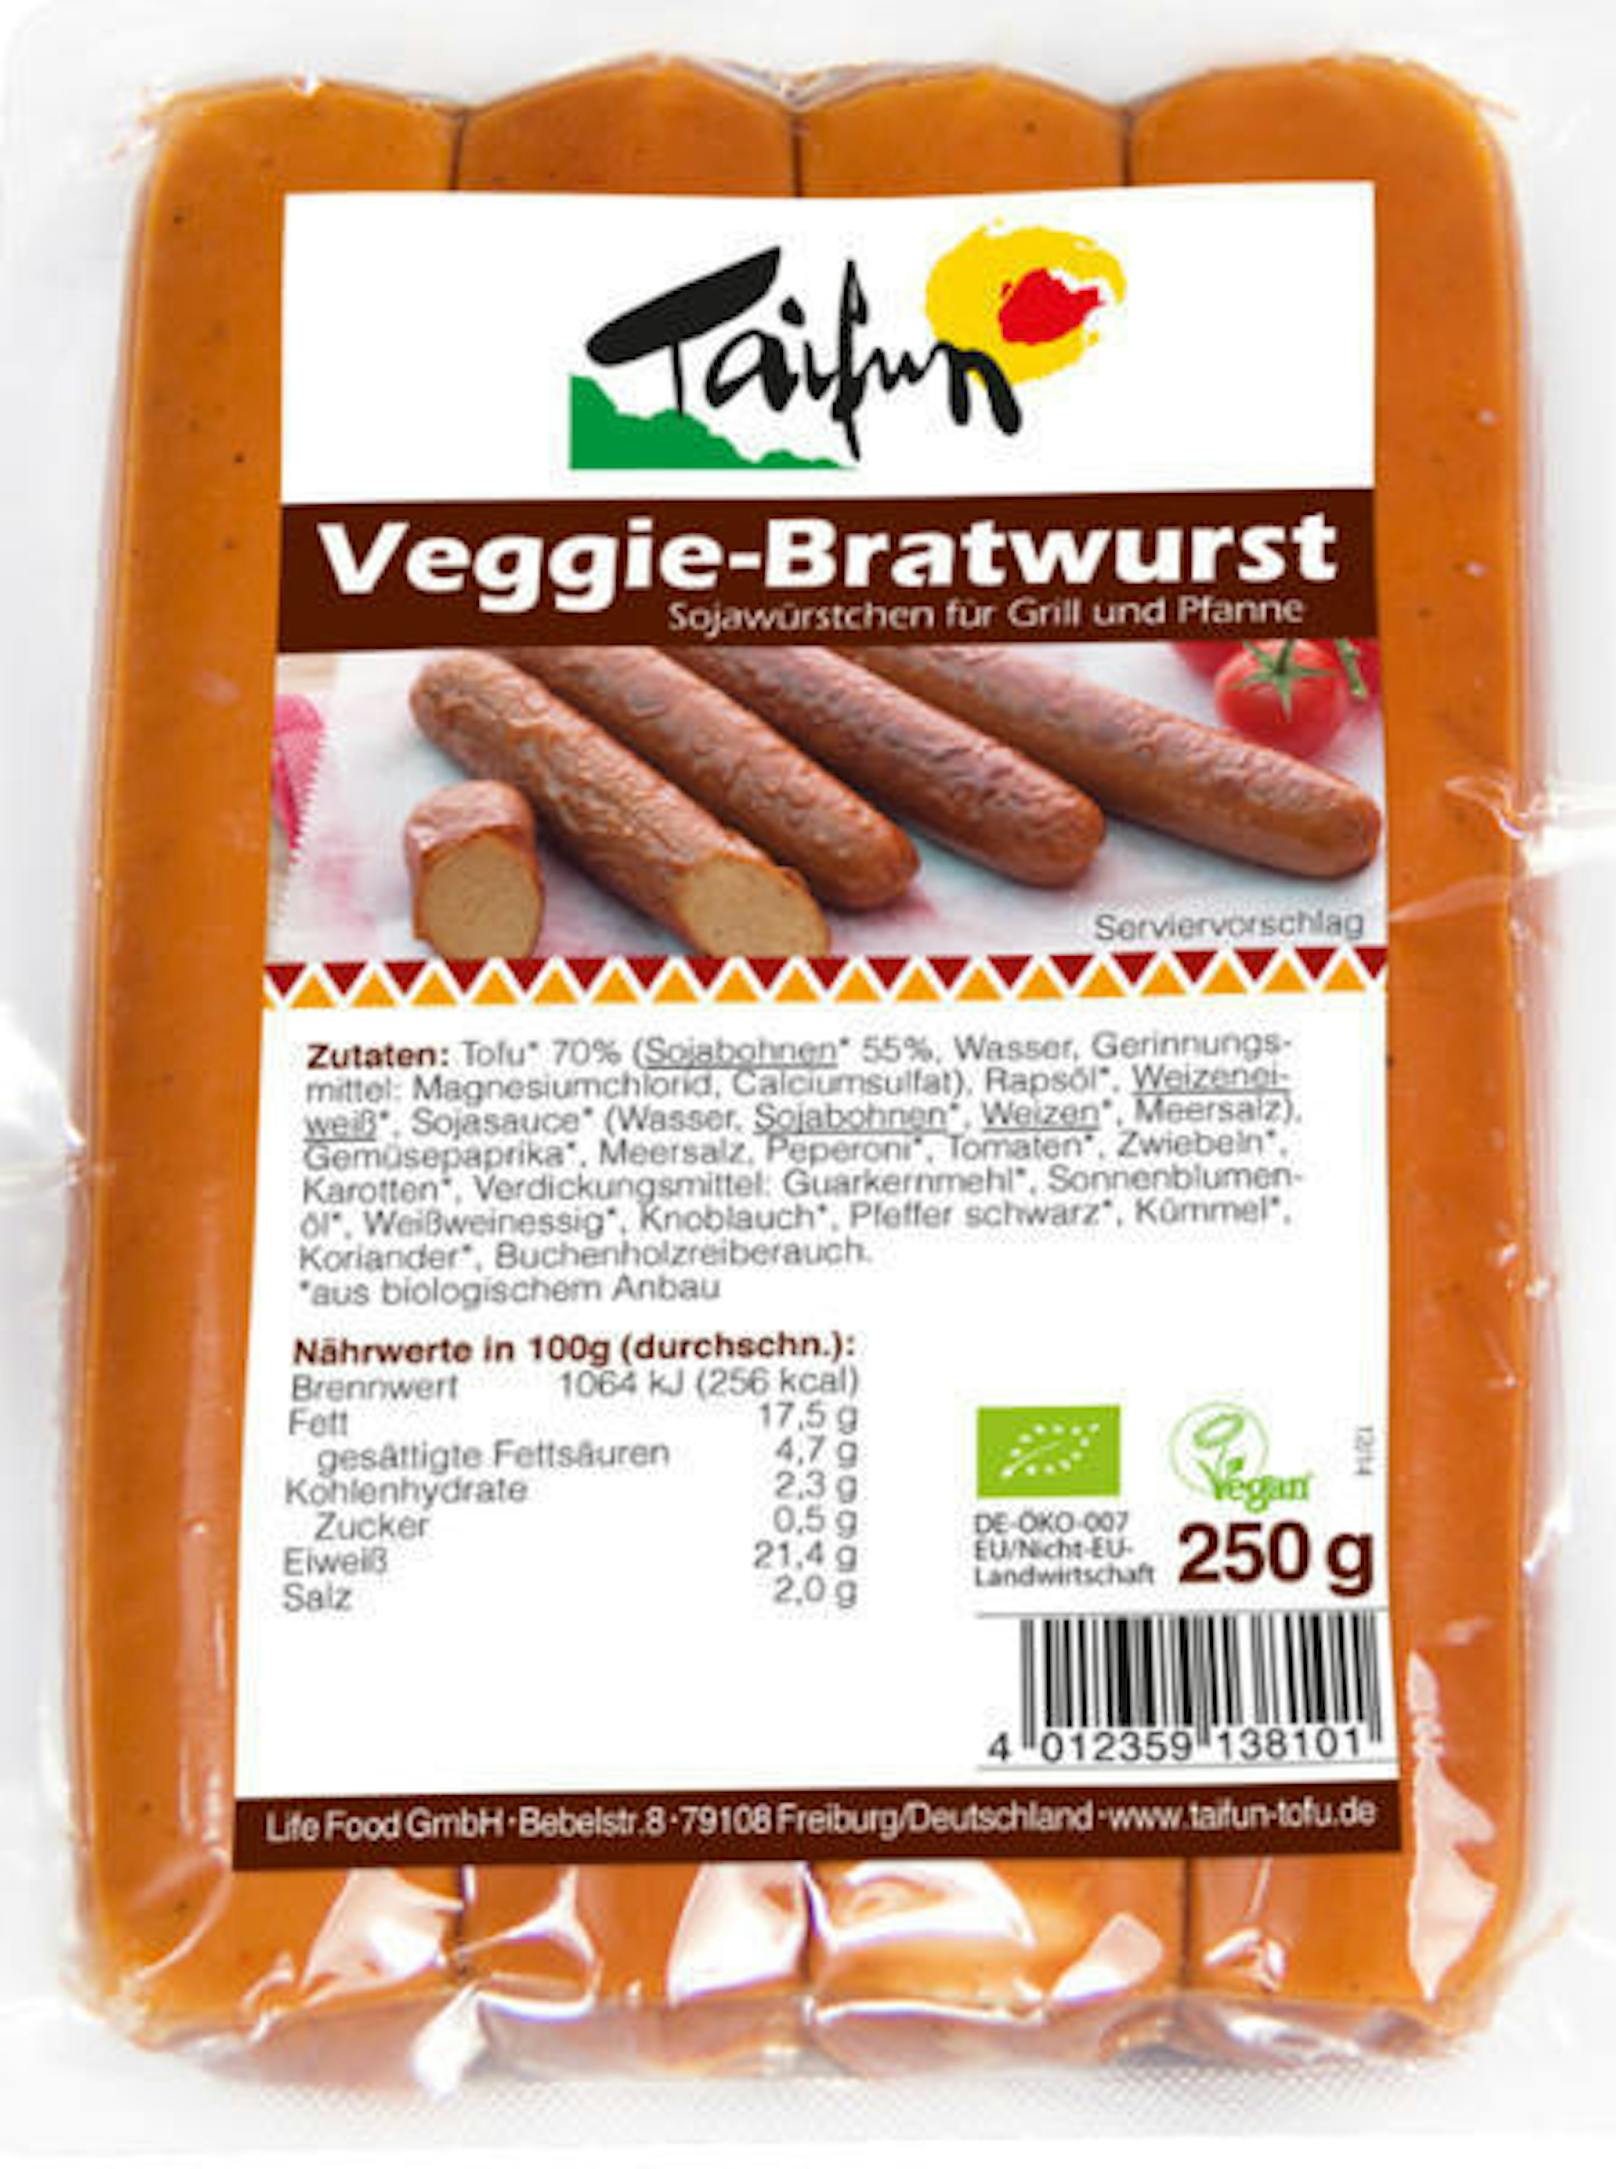 ... der "Veggie-Bratwurst" von Taifun.